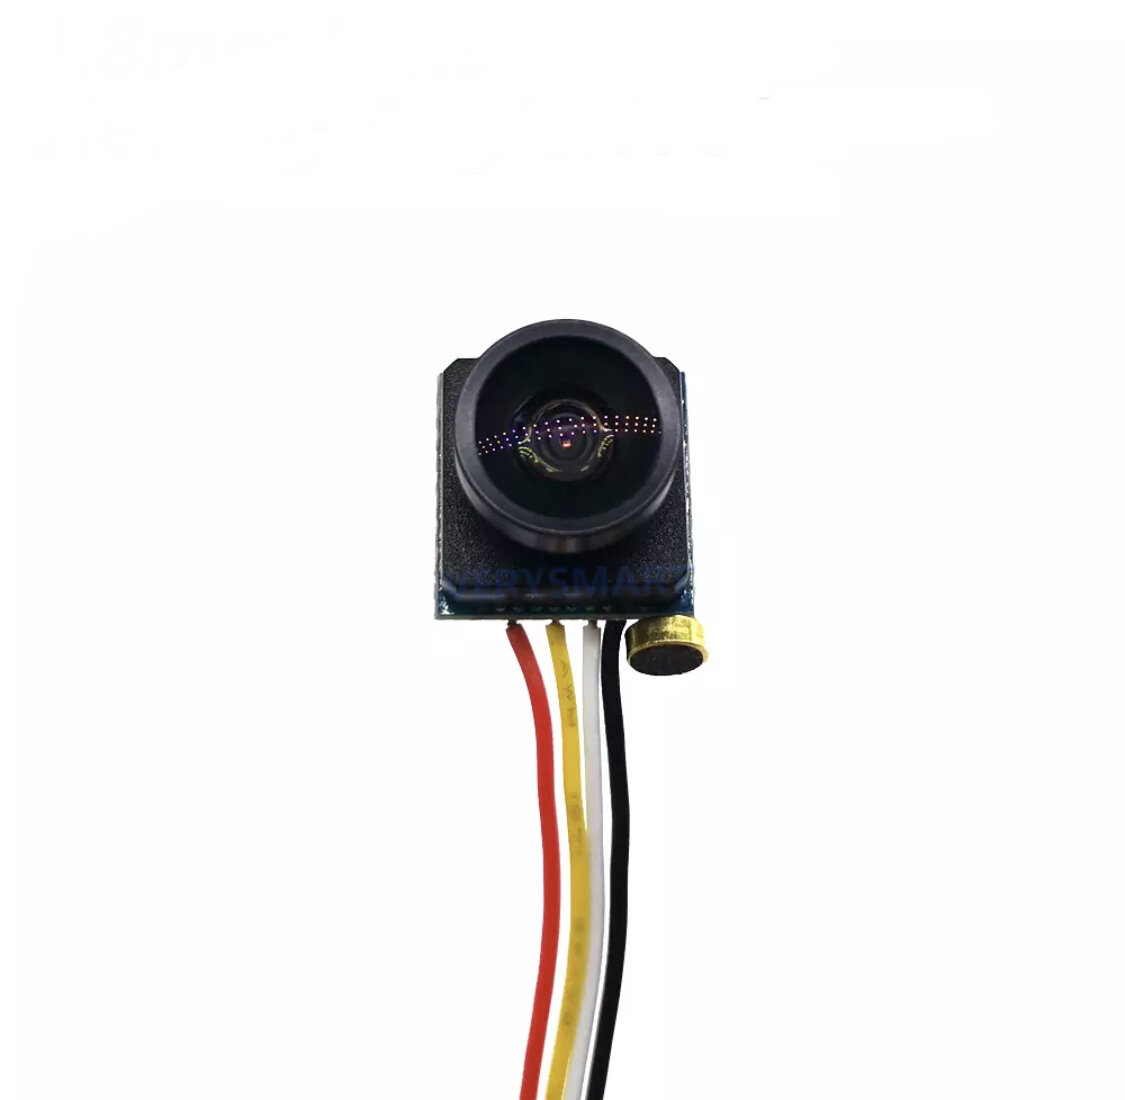 Камера видеонаблюдения мини аналоговая, 700 TVL, объектив 1.8 мм , угол обзора 170 градусов, с микрофоном, размер 12x12 мм.